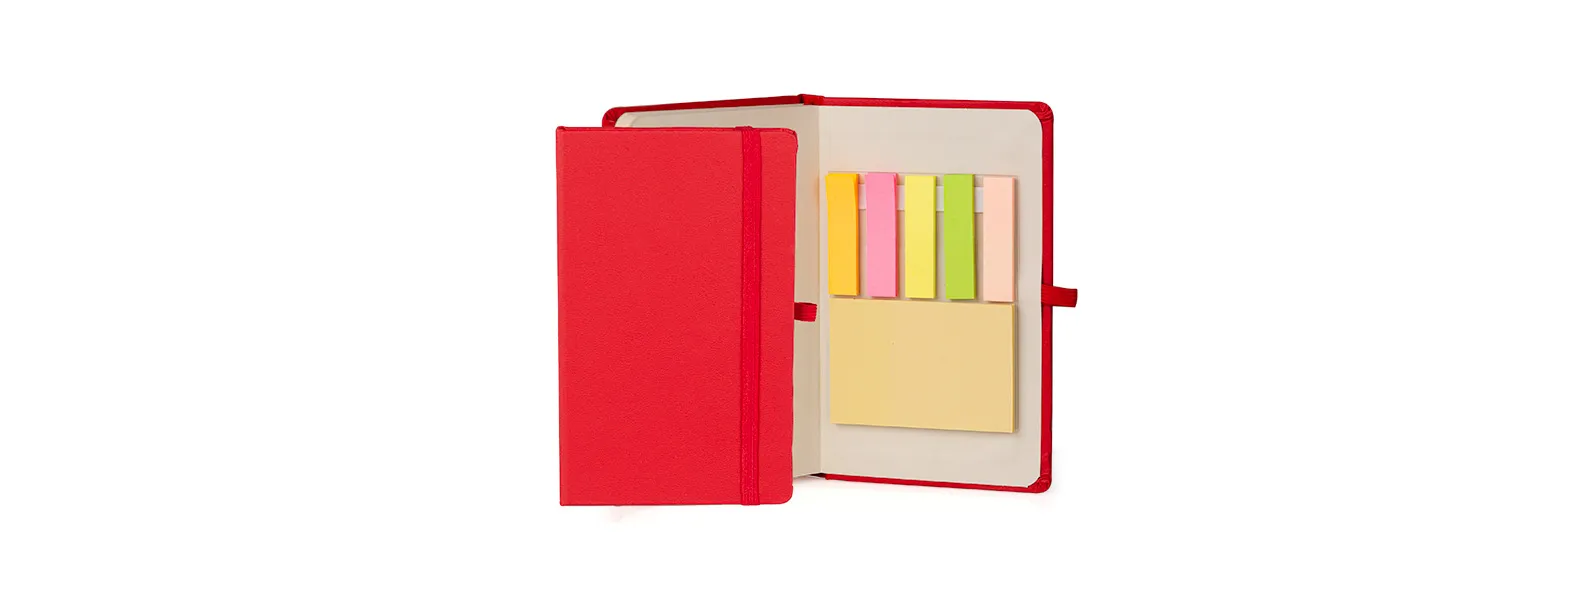 Caderno para anotações com capa dura. Conta com 80 folhas não pautadas, elástico para fechamento e 150 folhas autocolantes em 5 cores. Gramatura da folha de 70 g/m2